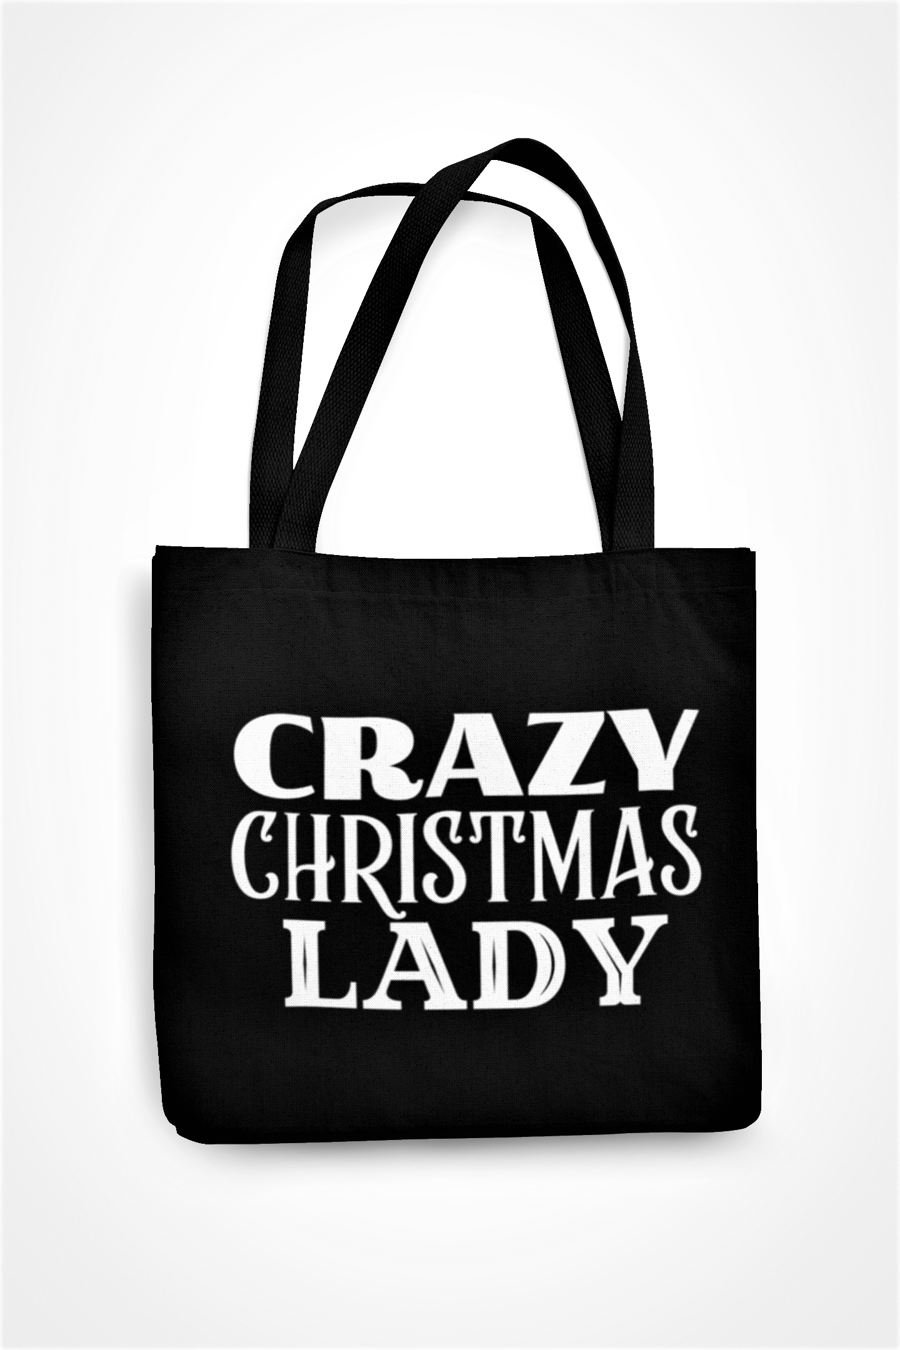 Crazy Christmas LADY Funny Christmas Tote Bag - Shopper Bag xmas Gift